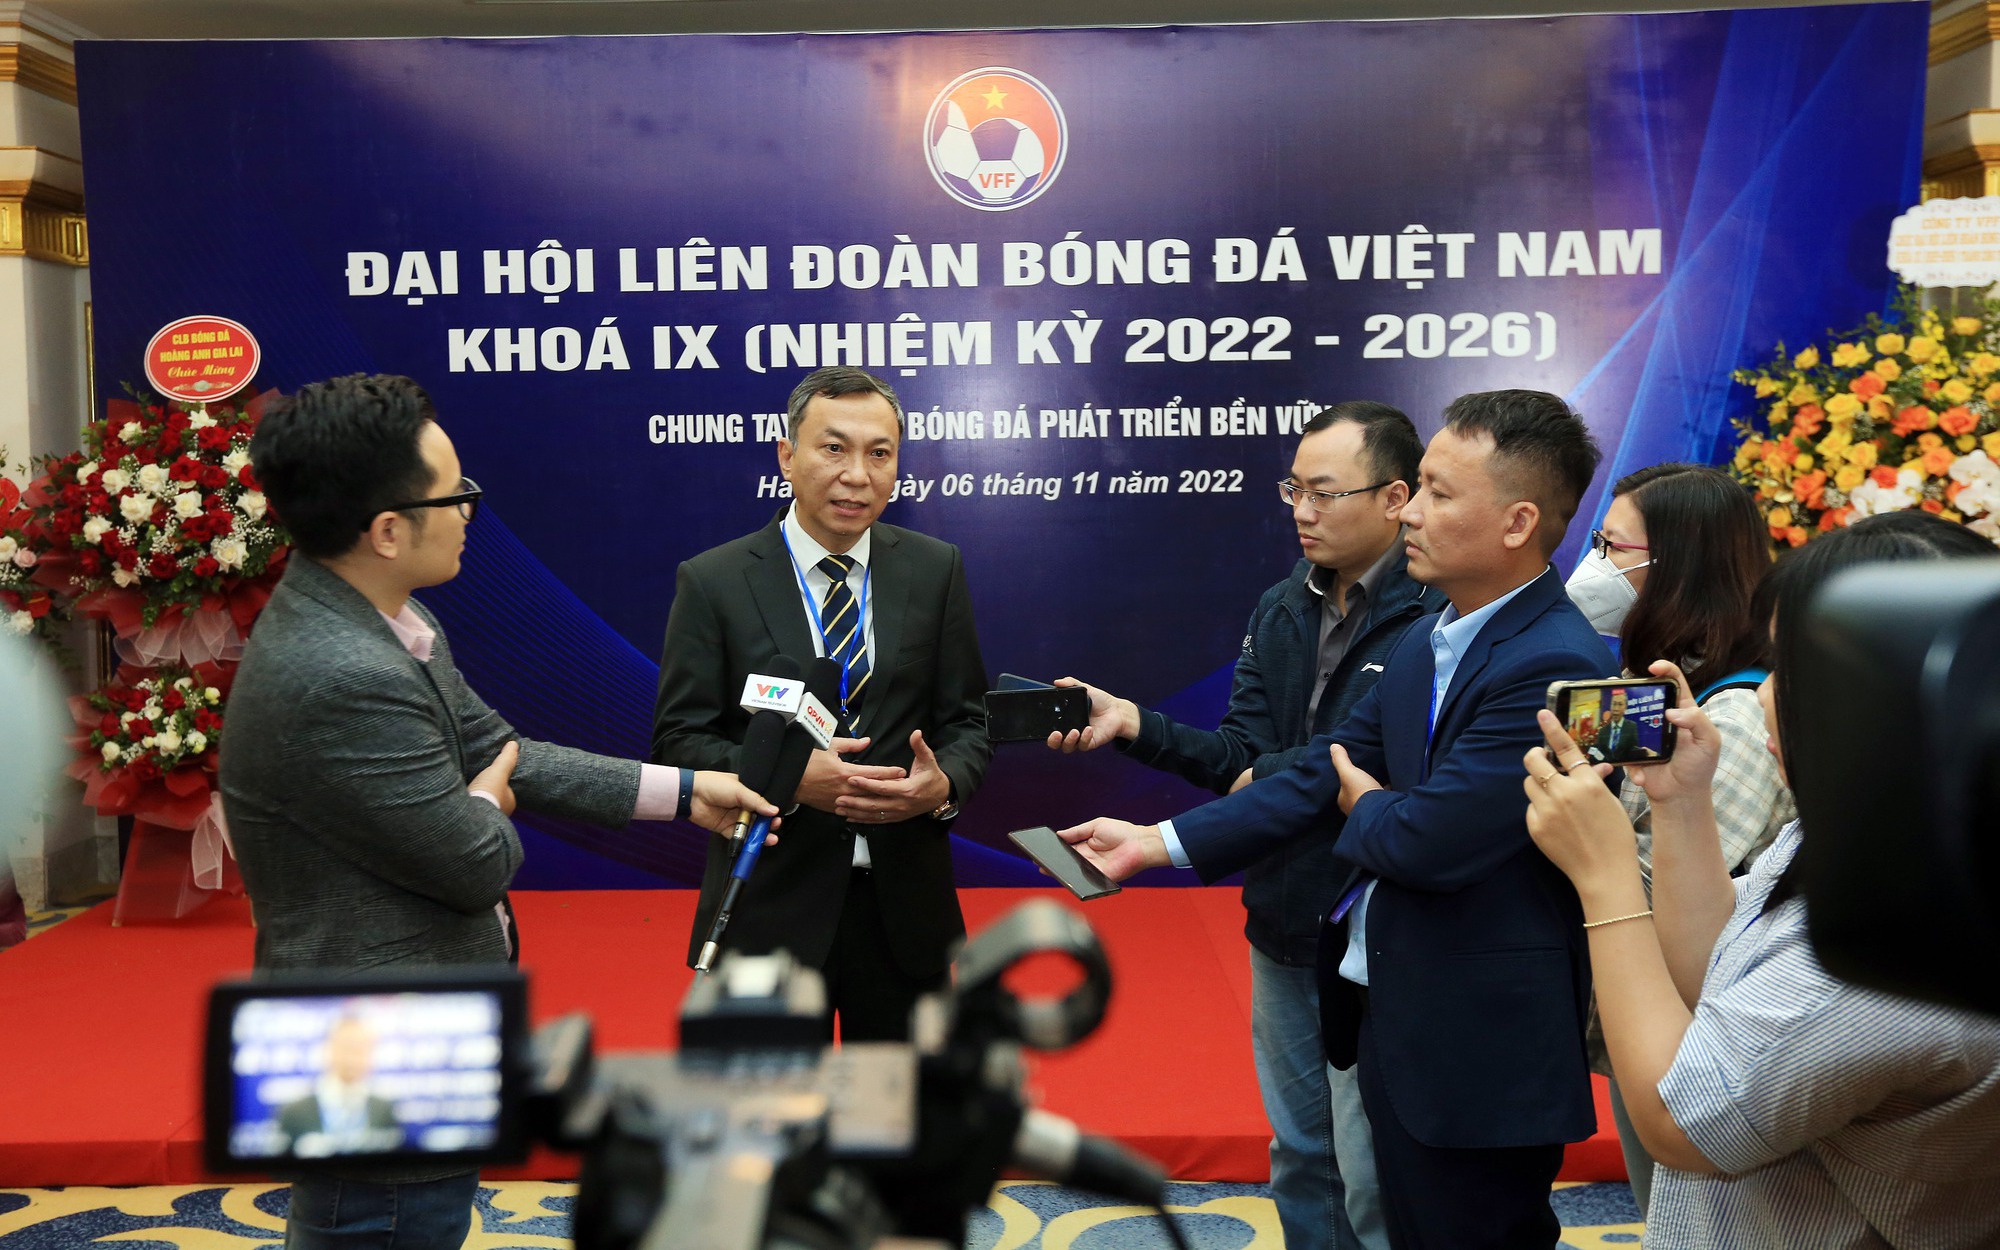 Chủ tịch VFF Trần Quốc Tuấn: "Phấn đấu đưa ĐT Việt Nam sớm góp mặt tại World Cup"